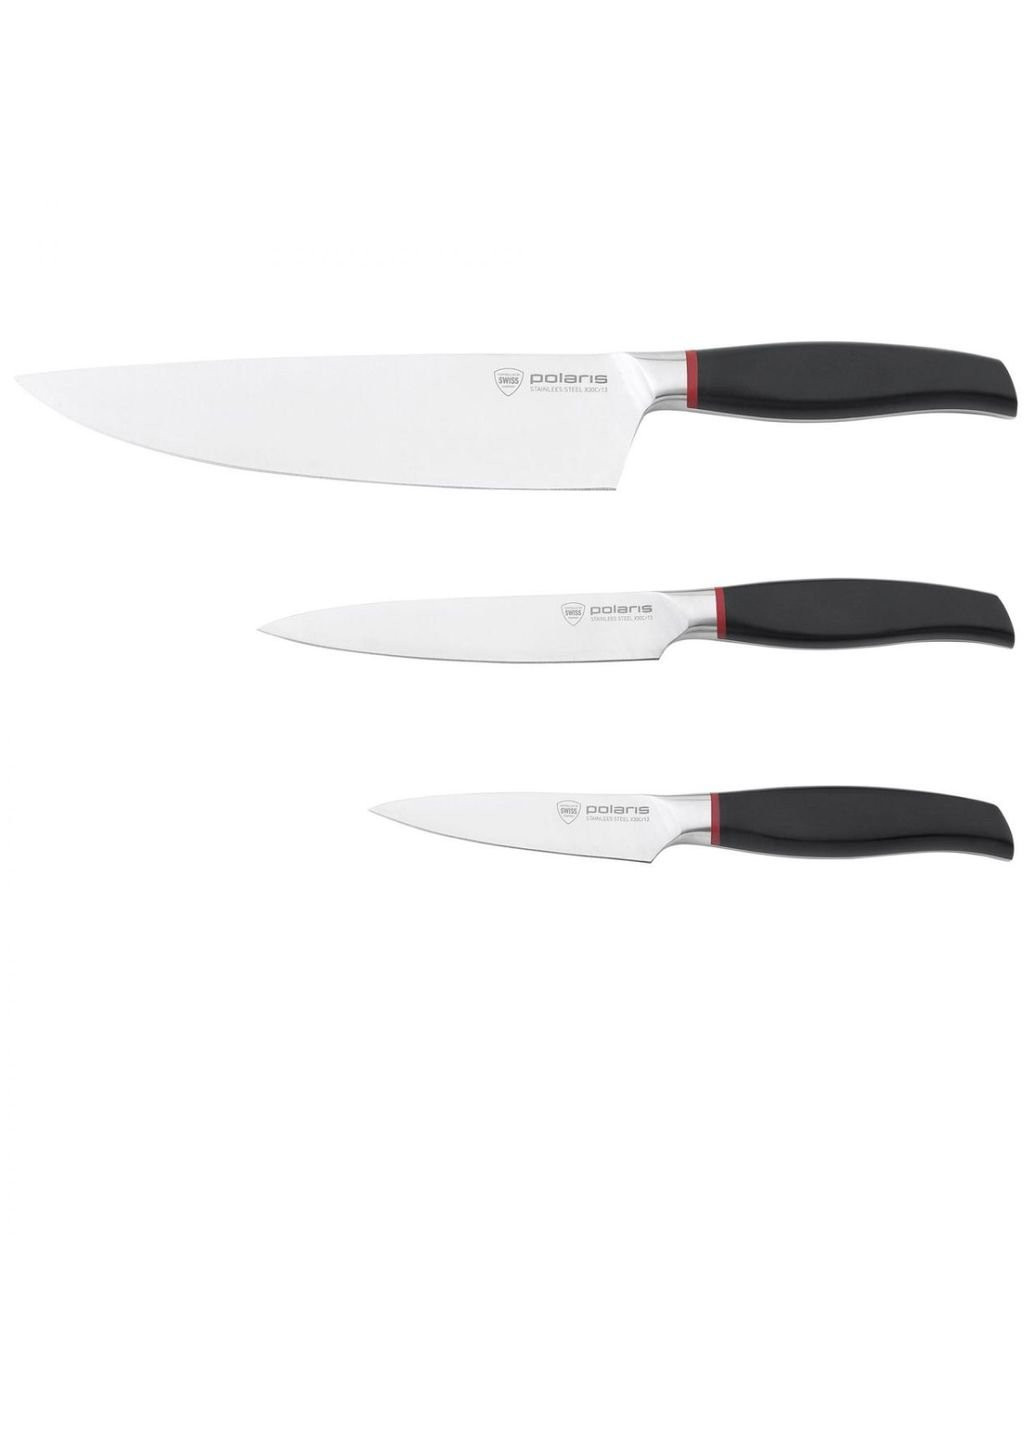 Набор ножей collection-3SS 3 предмета Polaris комбинированные,